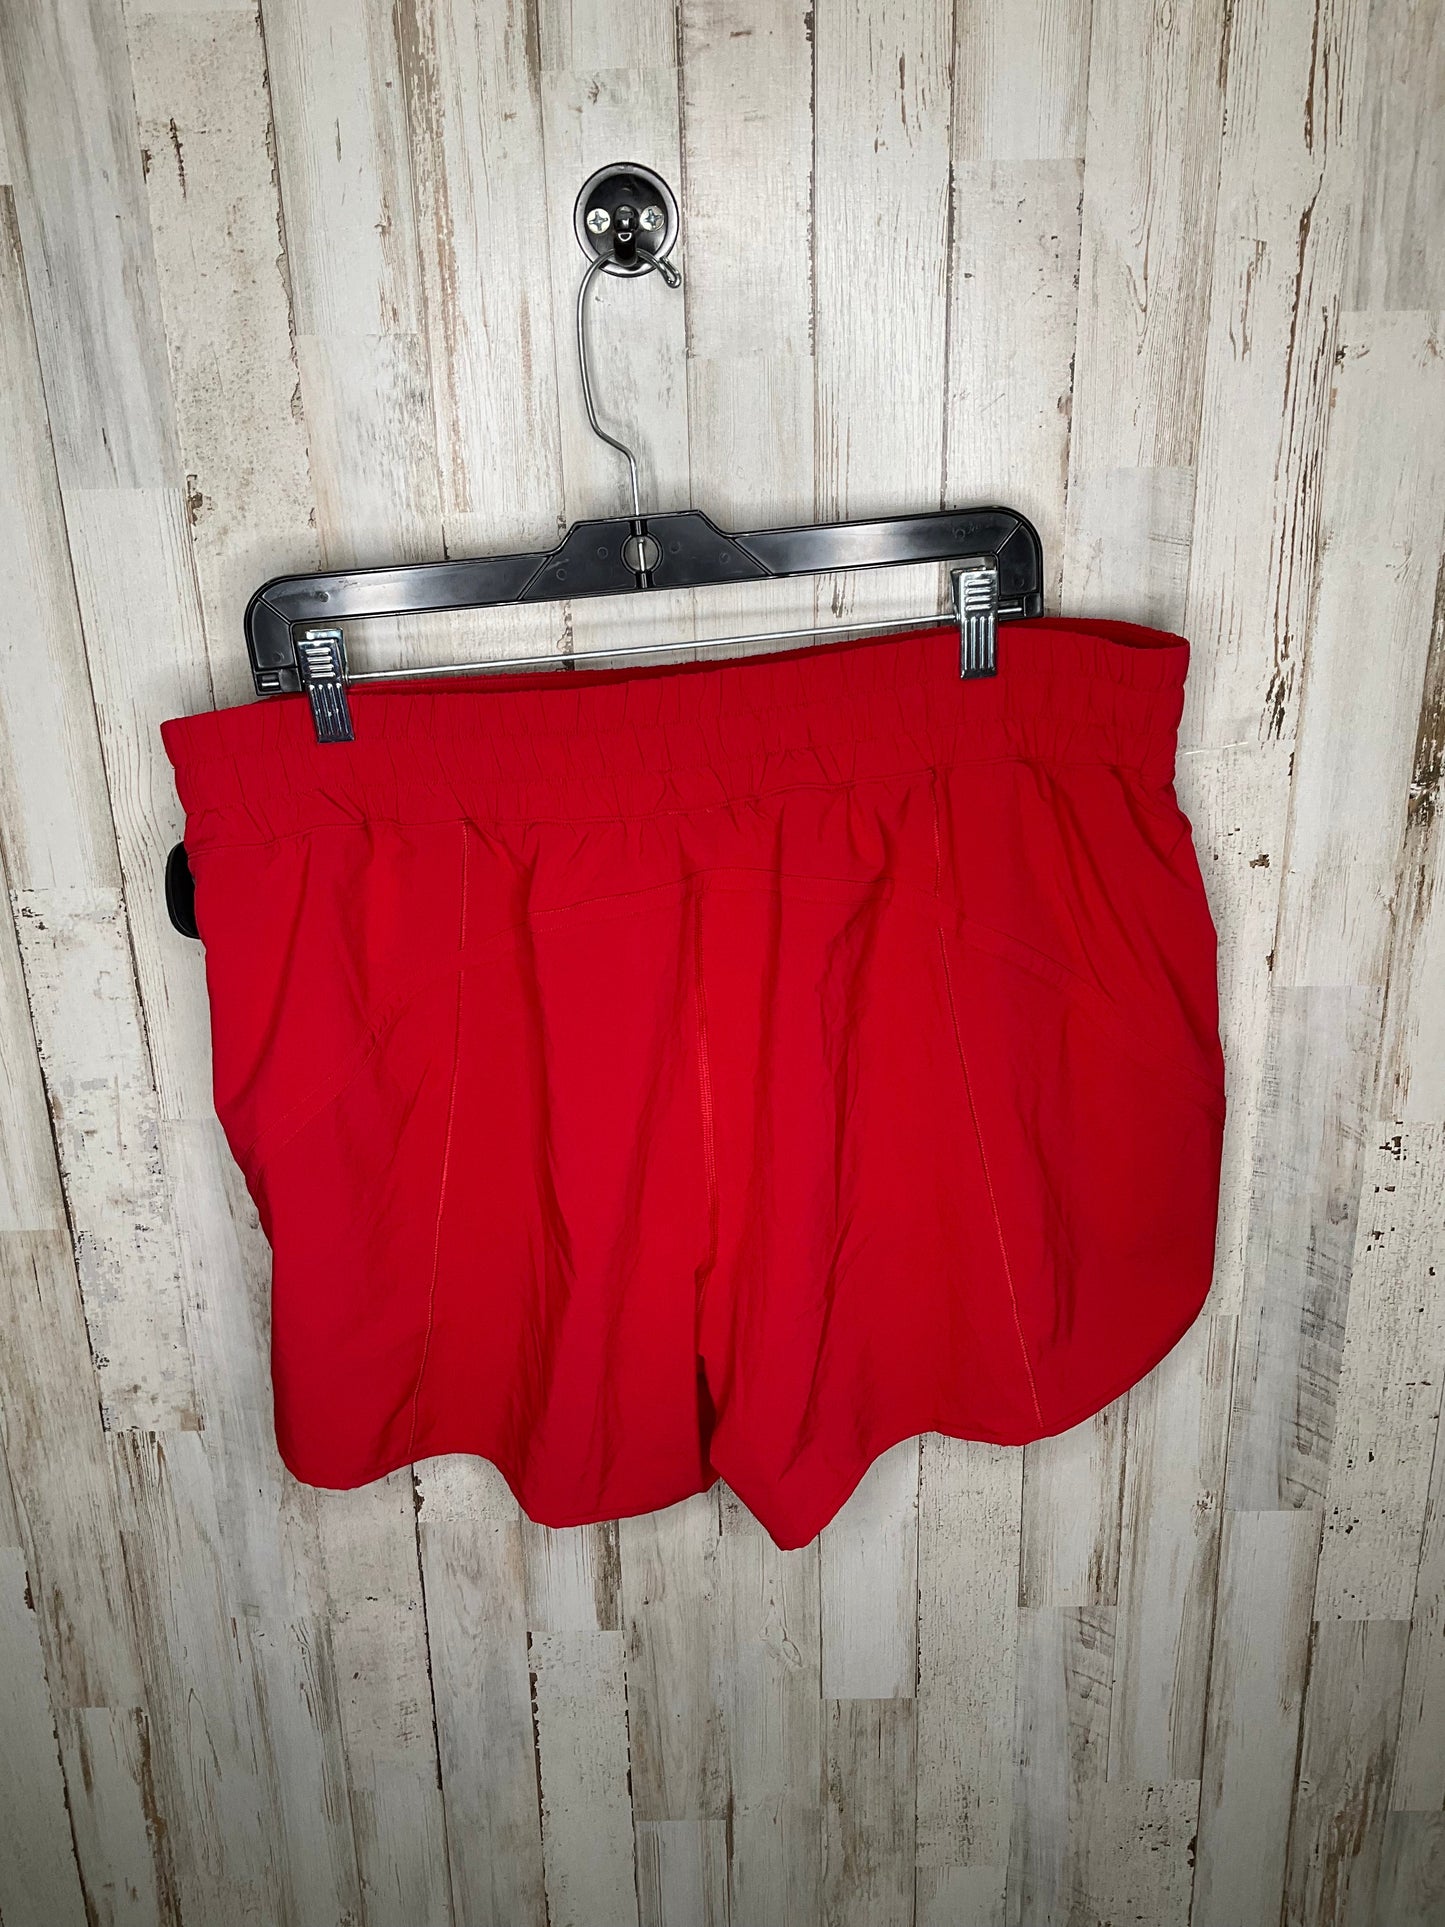 Red Athletic Shorts Lululemon, Size 18